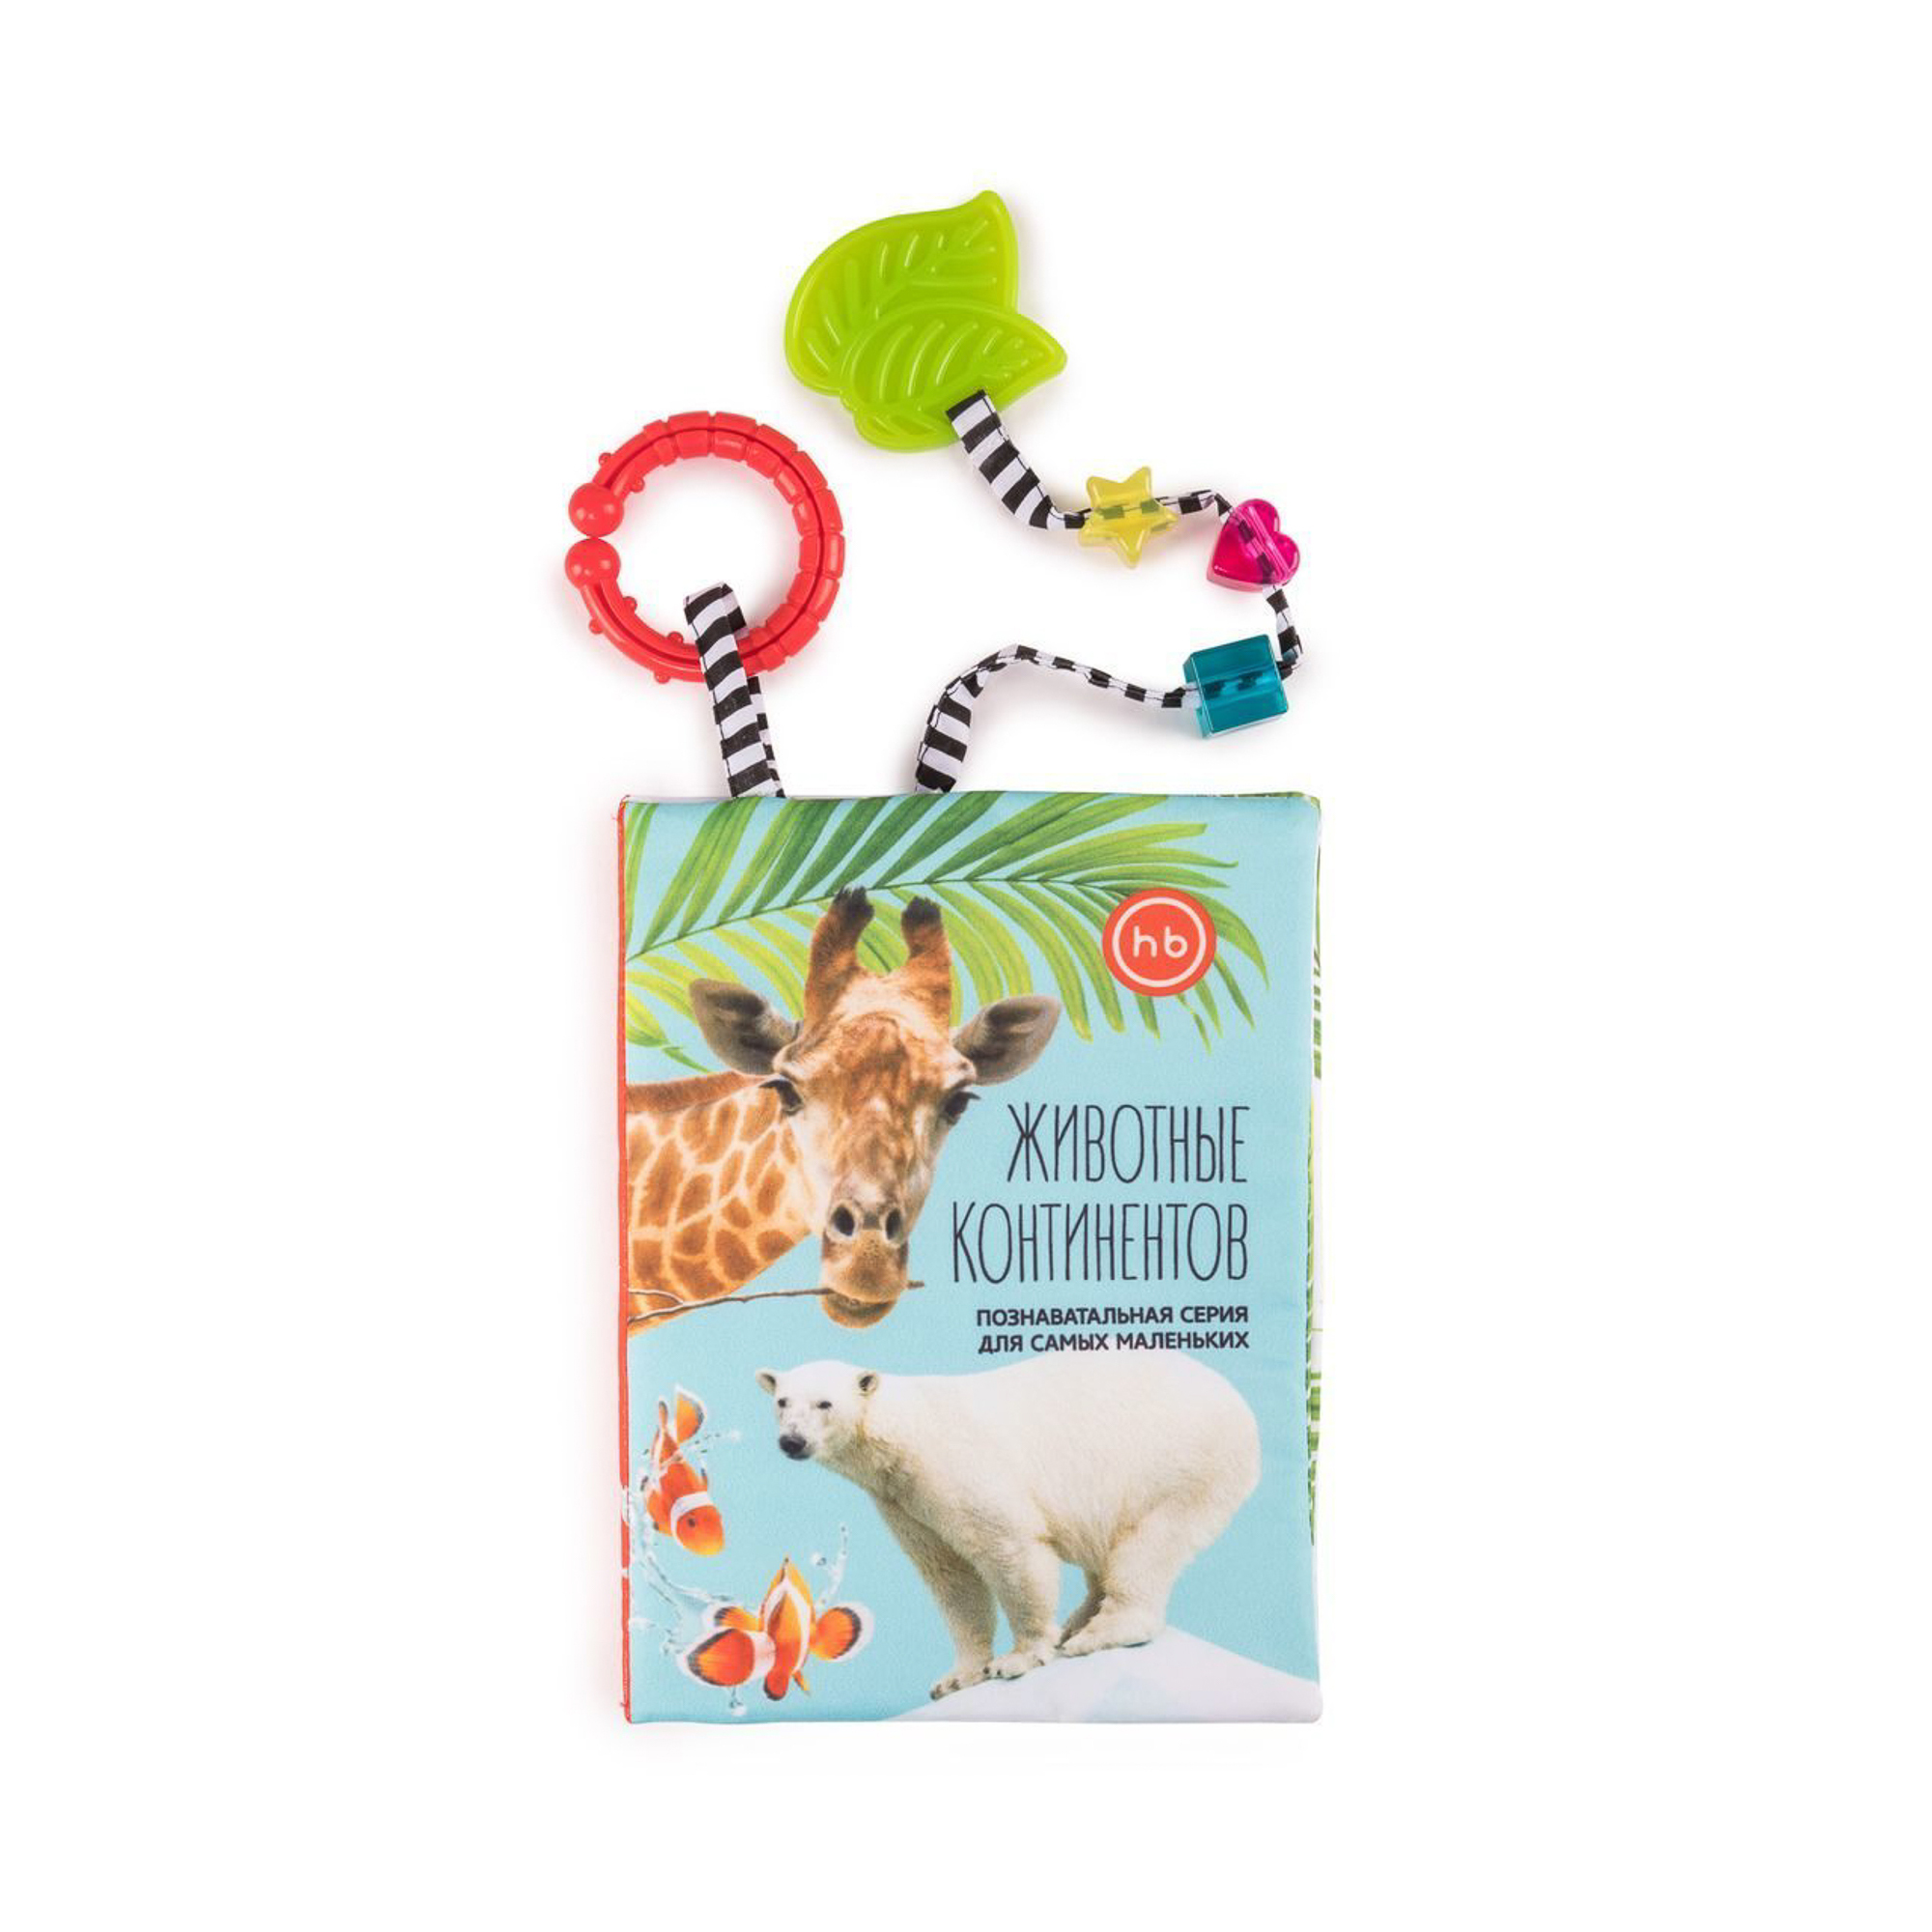 фото Книжка-игрушка happy baby животные континентов